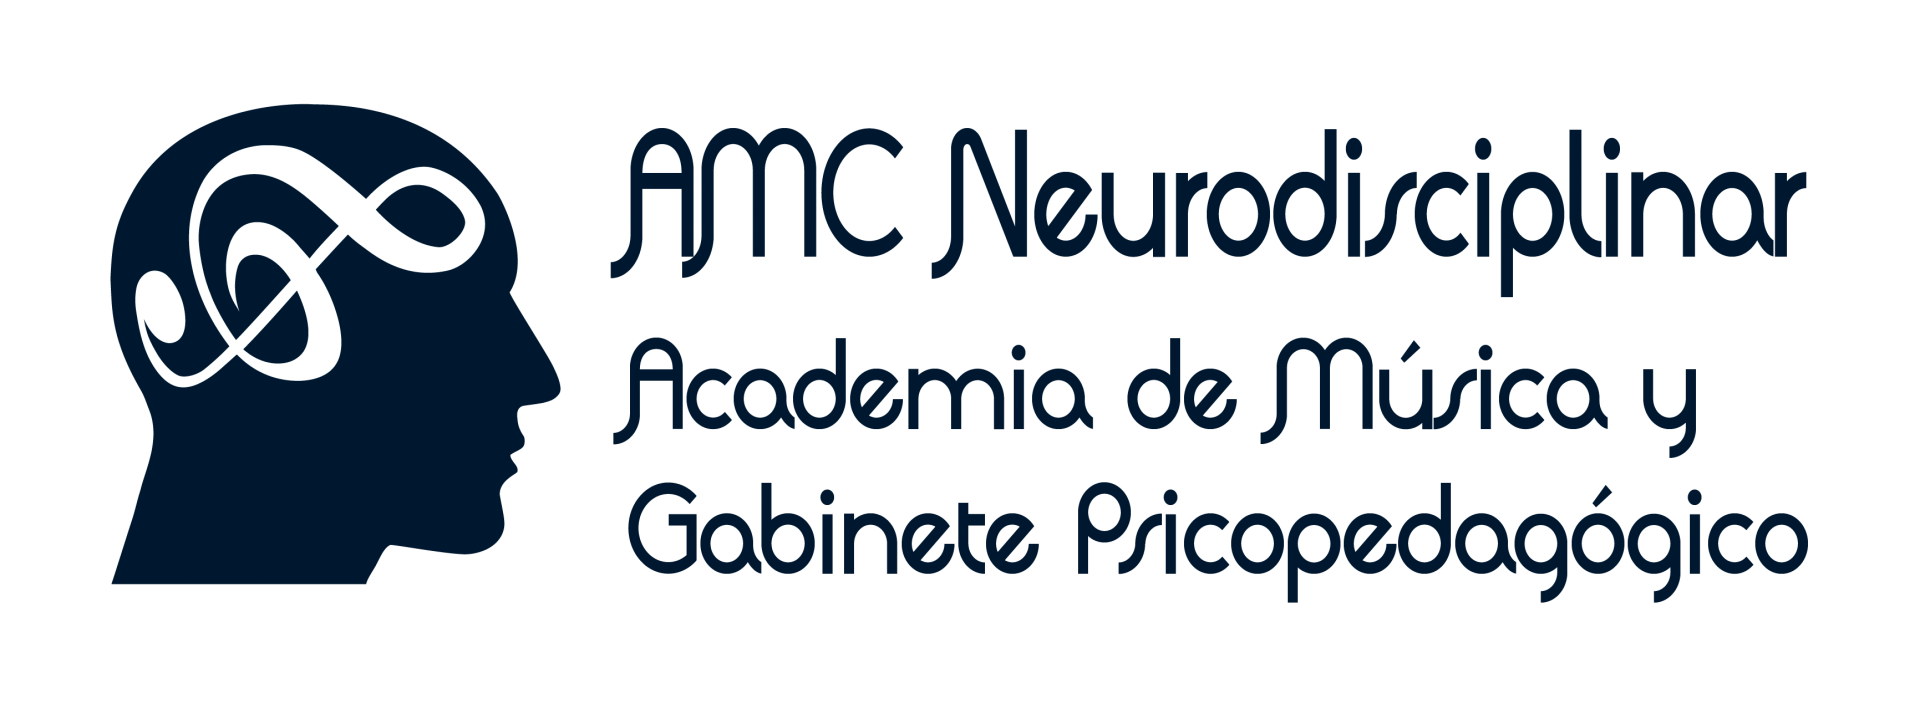 Logo AMC Neurodisciplinar, Academia de Música y Gabinete Psicopedagógico, Escuela Musica Guadalix de la Sierra